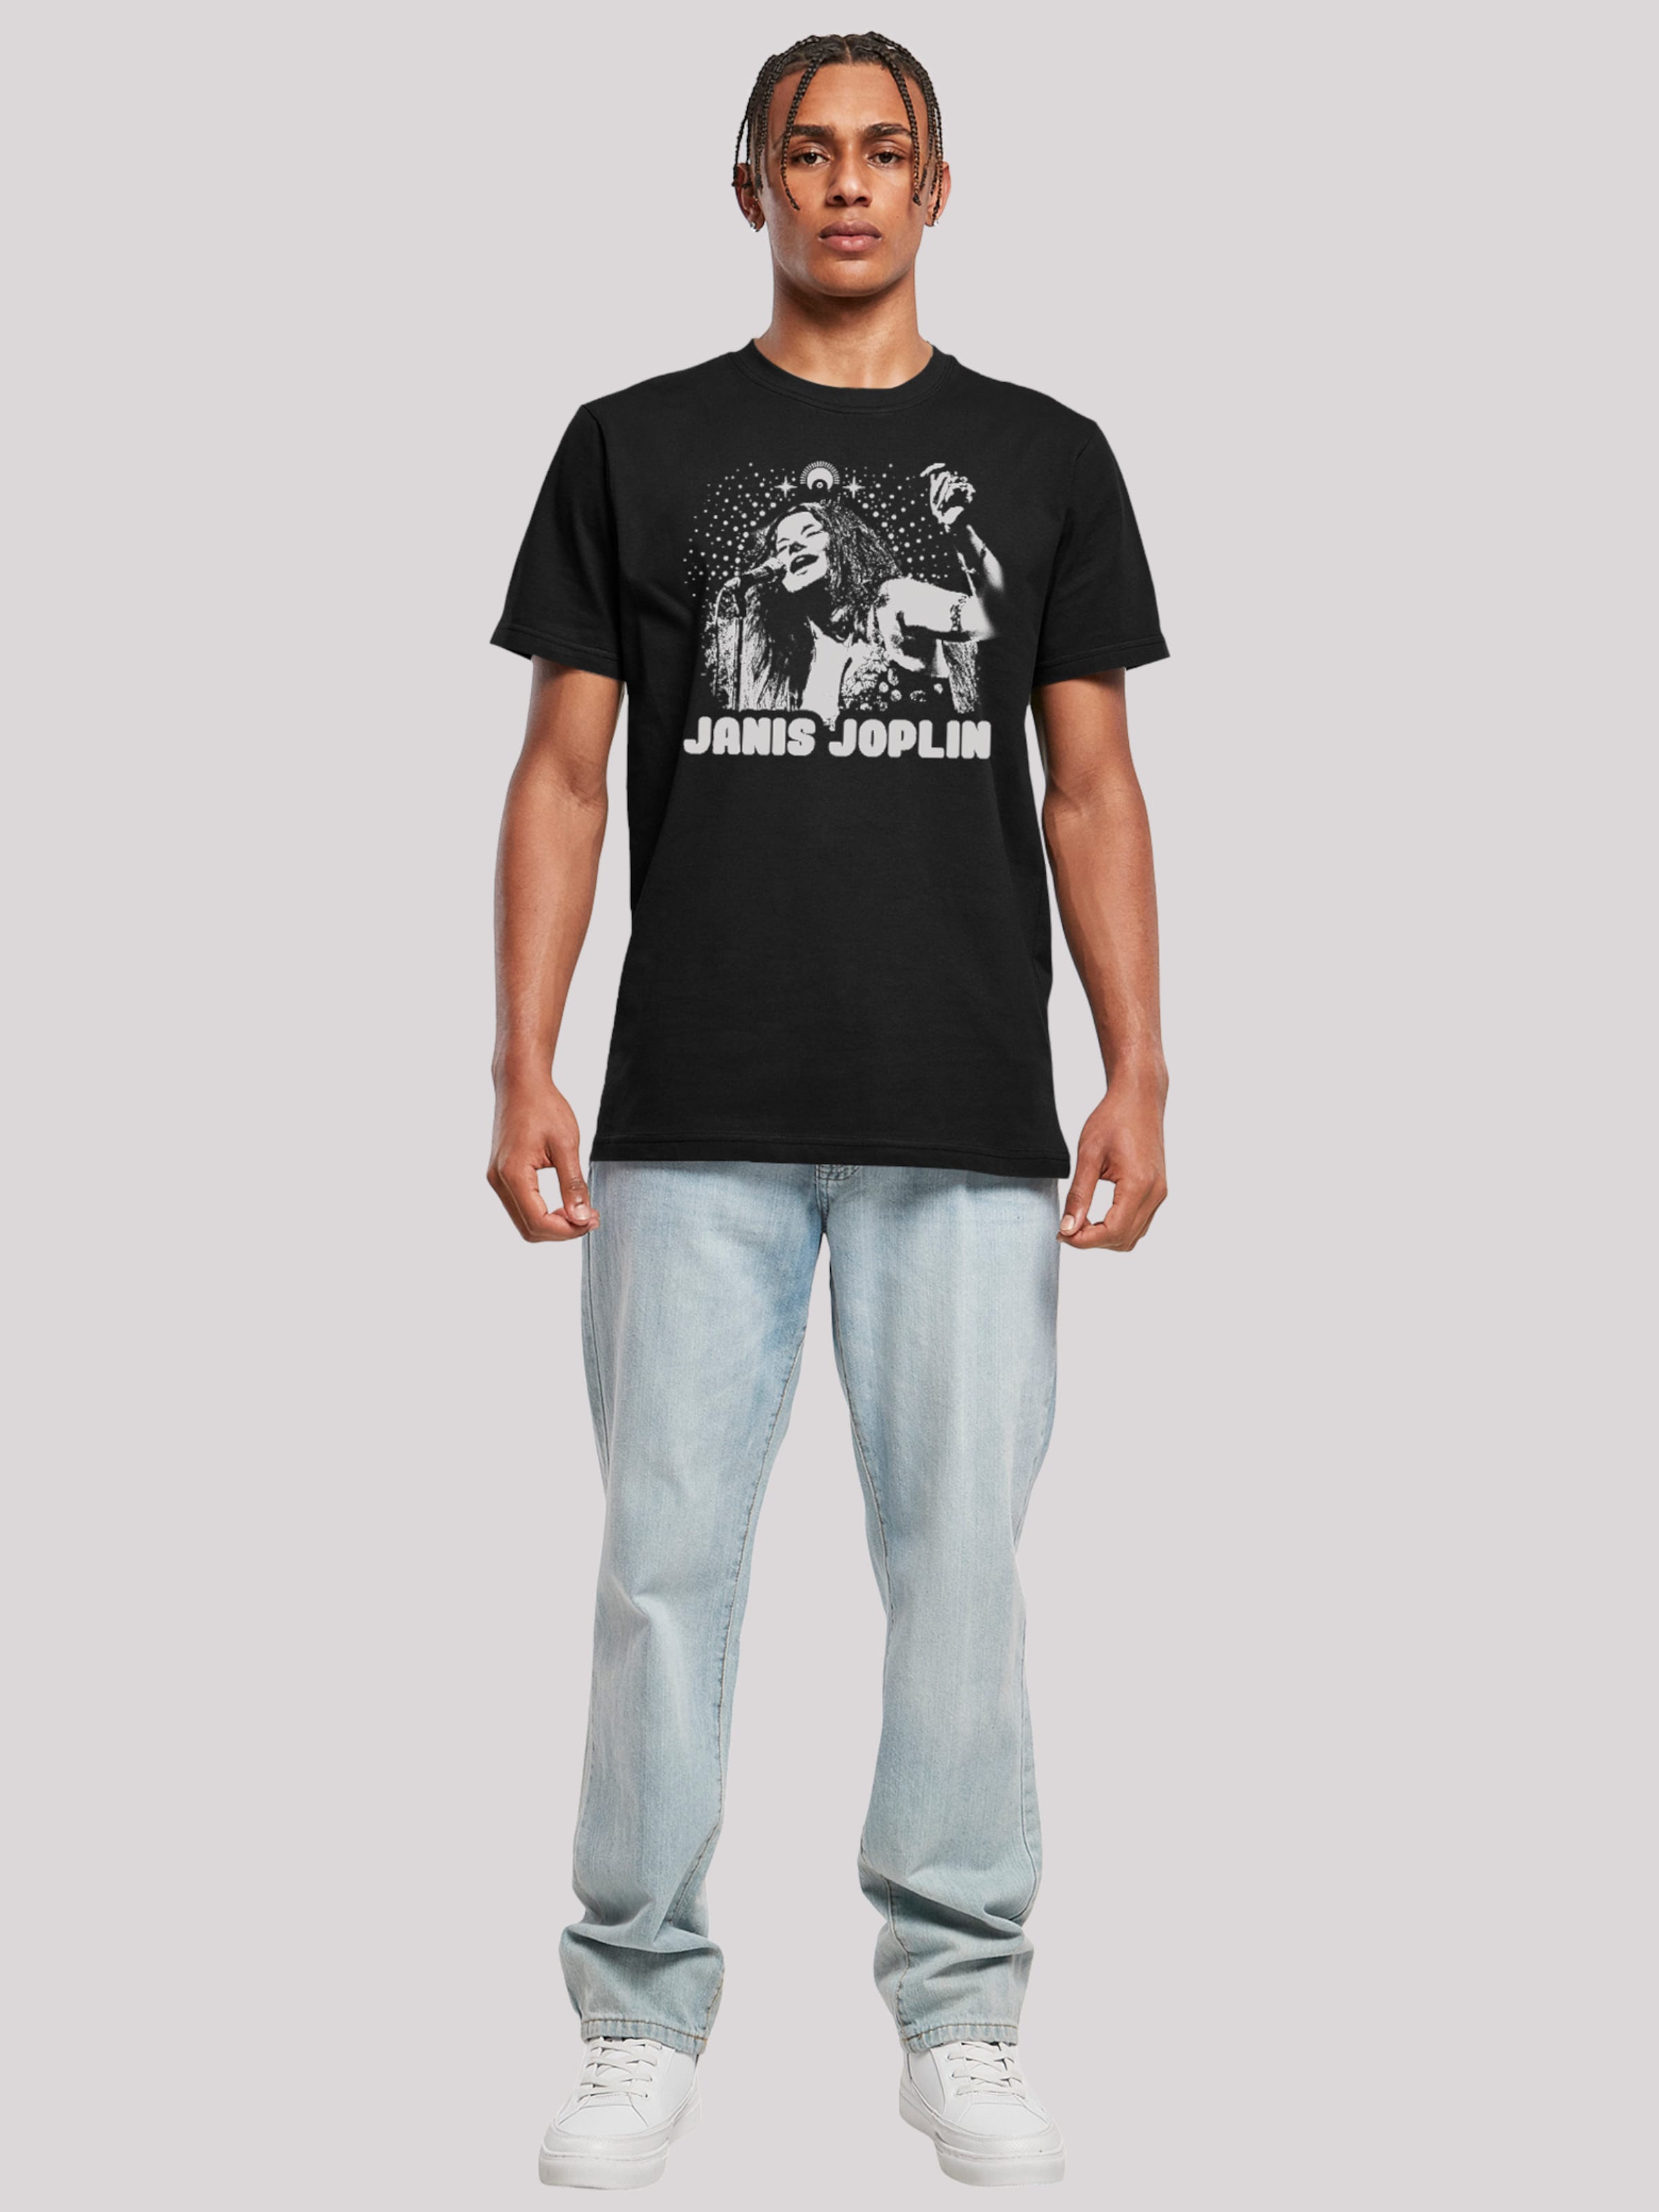 Männer Große Größen F4NT4STIC Shirt 'Janis Joplin' in Schwarz - SO02698